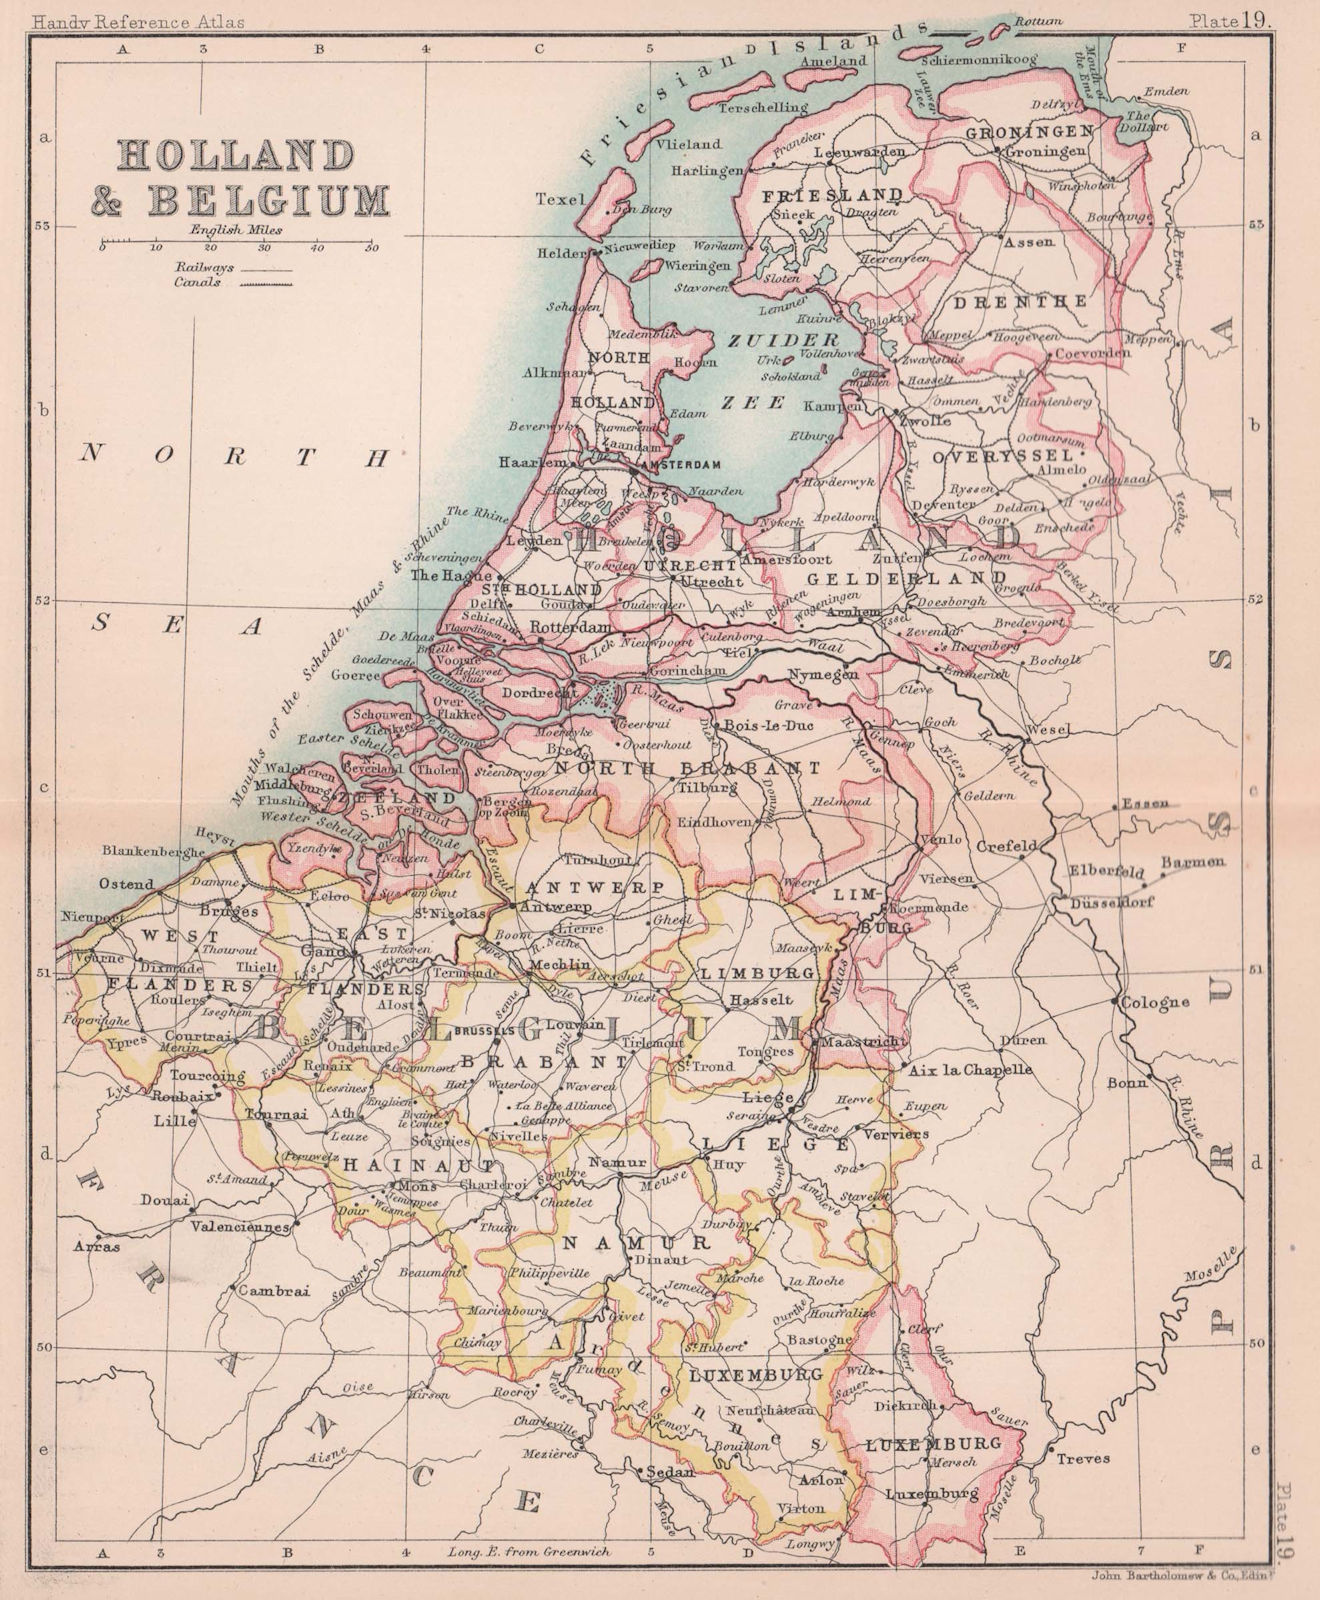 Holland & Belgium. Netherlands. BARTHOLOMEW 1893 old antique map plan chart